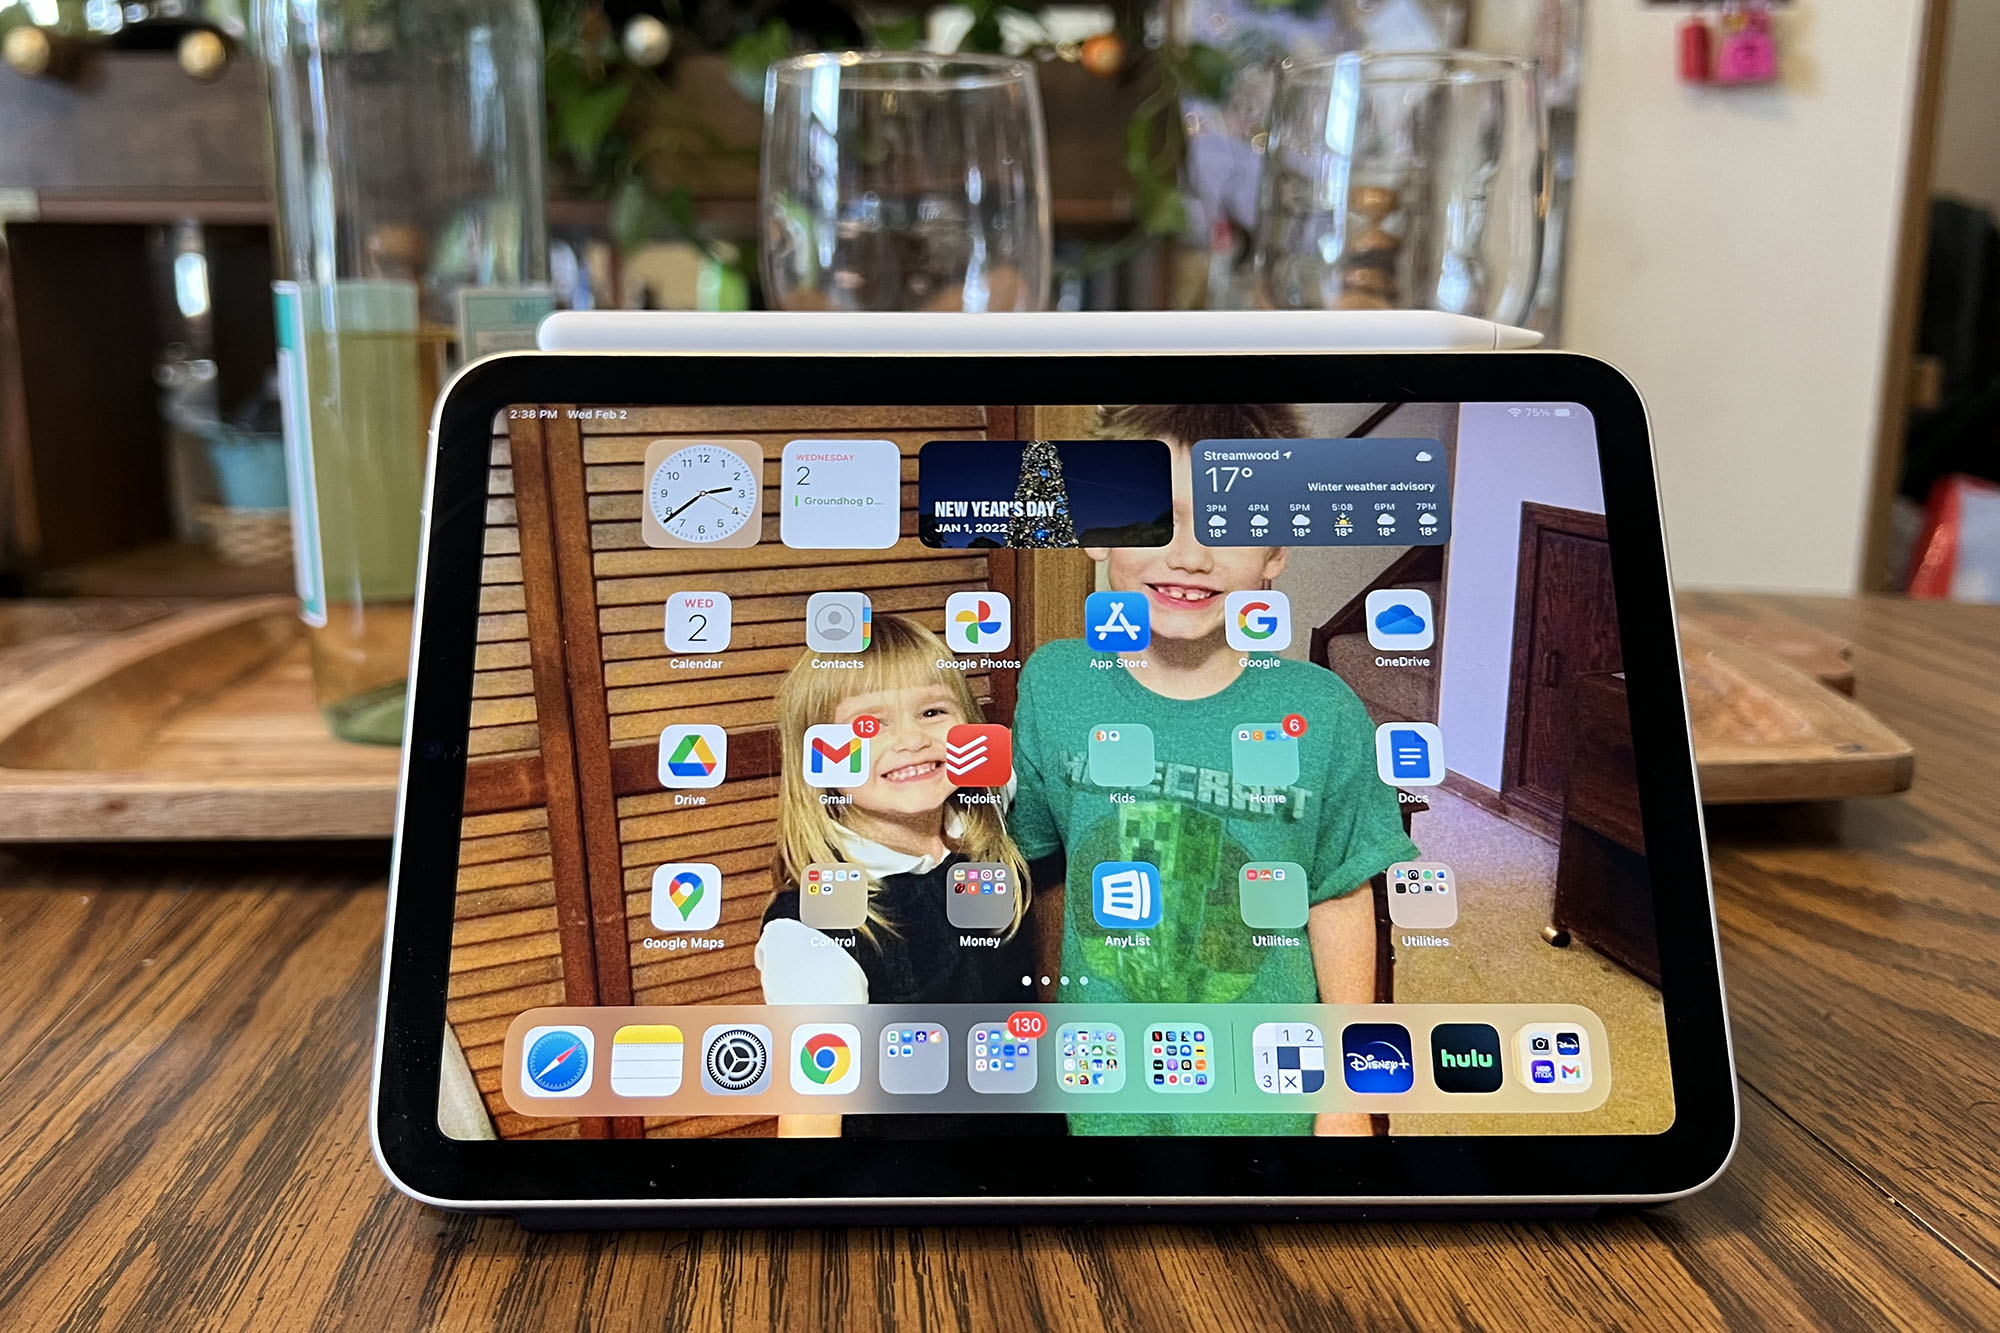 Un iPad Mini 2021 que muestra la pantalla de inicio con una serie de aplicaciones.